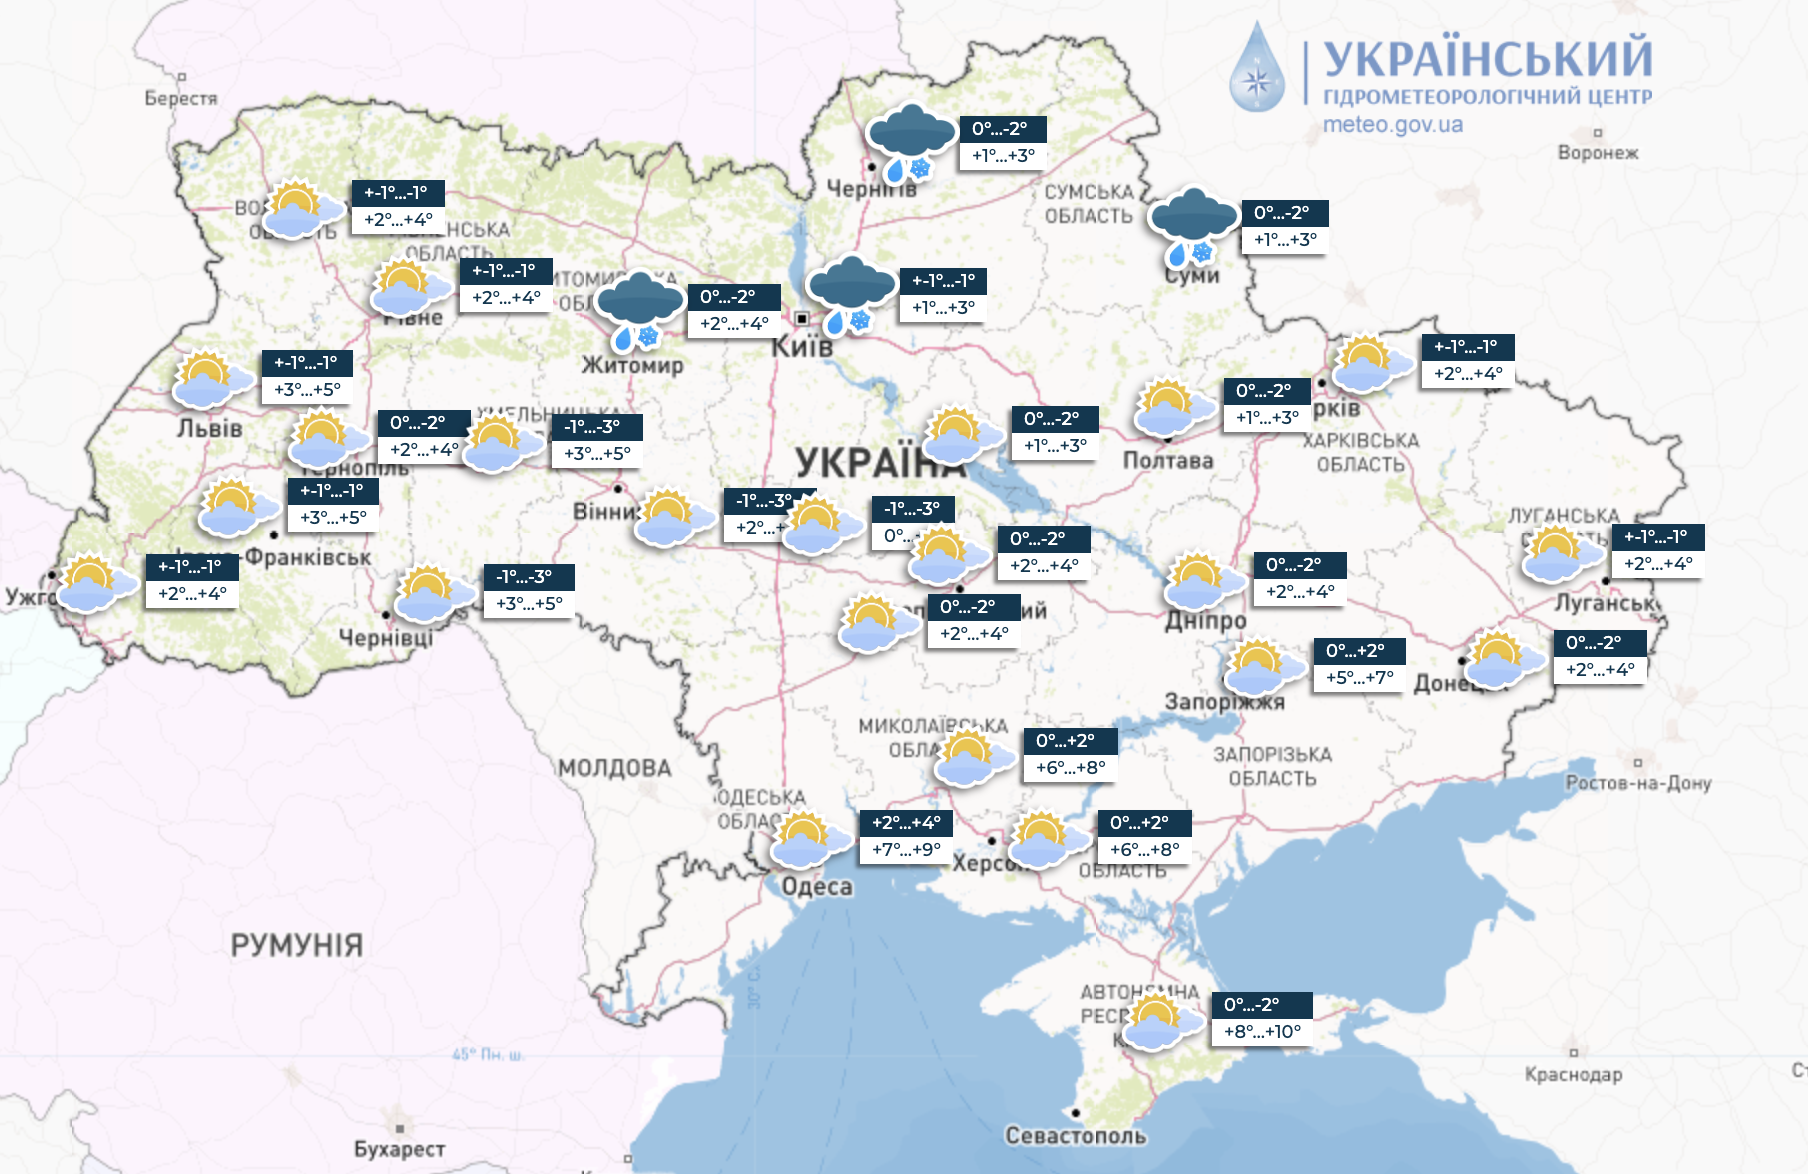 В Украину идет потепление, но возможны ледяные дожди: народный синоптик предупредил об угрозе